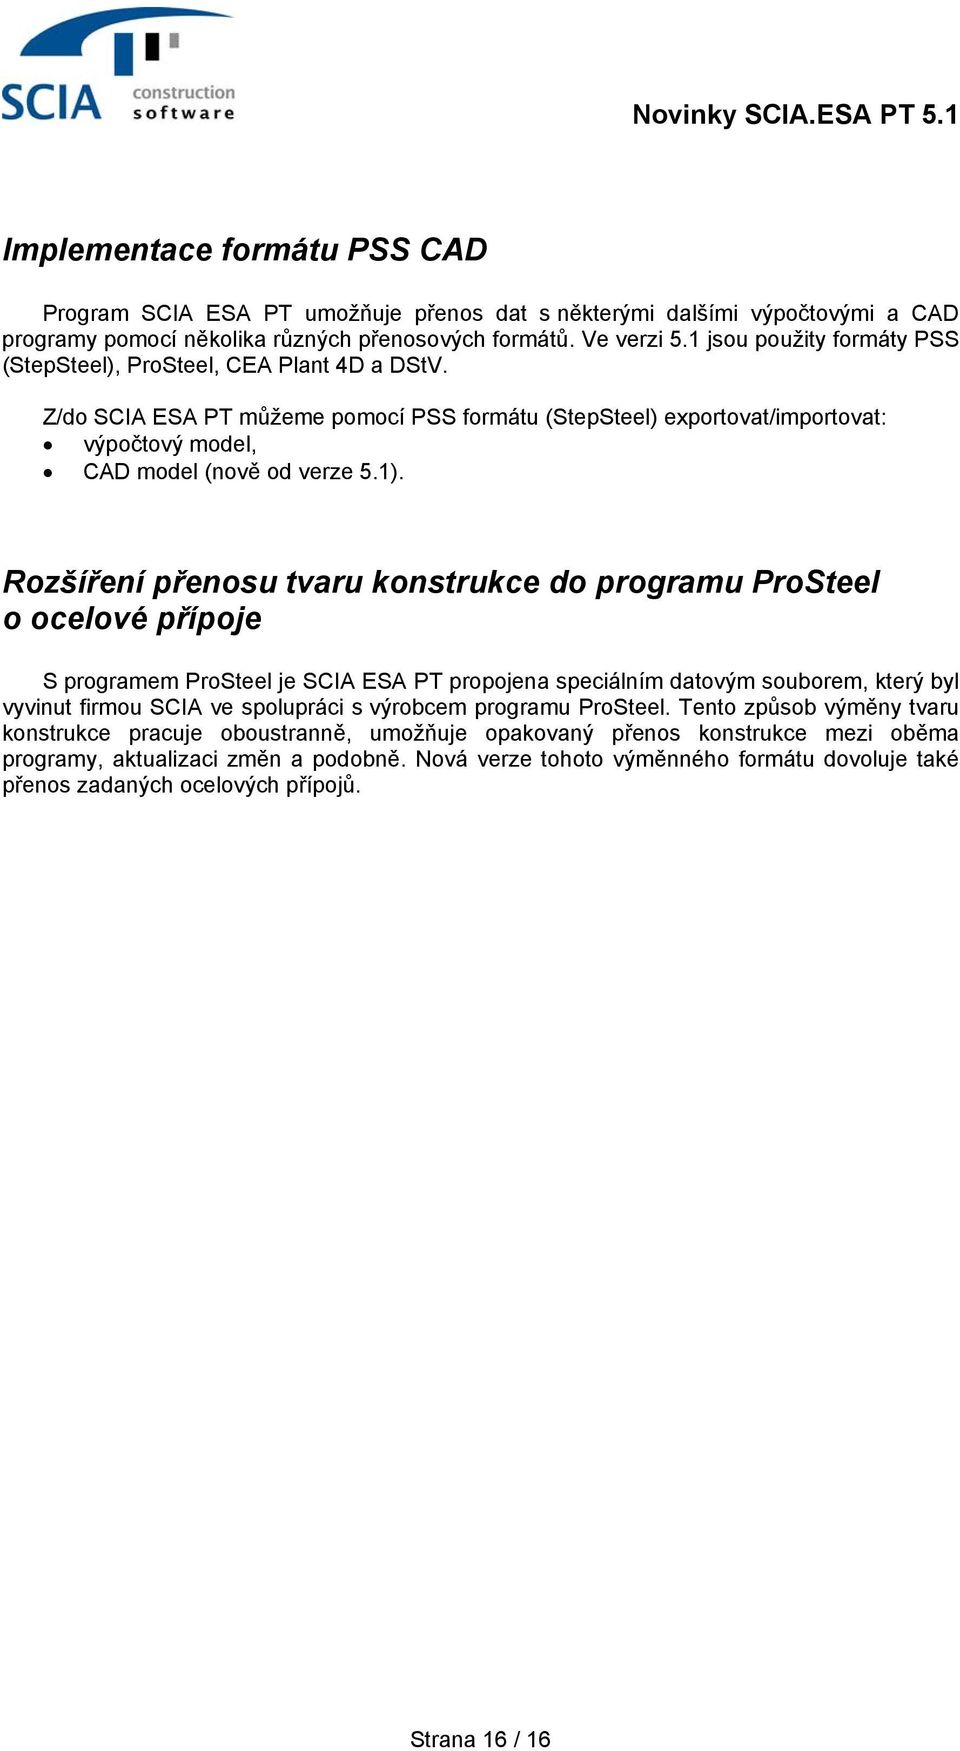 Rozšíření přenosu tvaru konstrukce do programu ProSteel o ocelové přípoje S programem ProSteel je SCIA ESA PT propojena speciálním datovým souborem, který byl vyvinut firmou SCIA ve spolupráci s